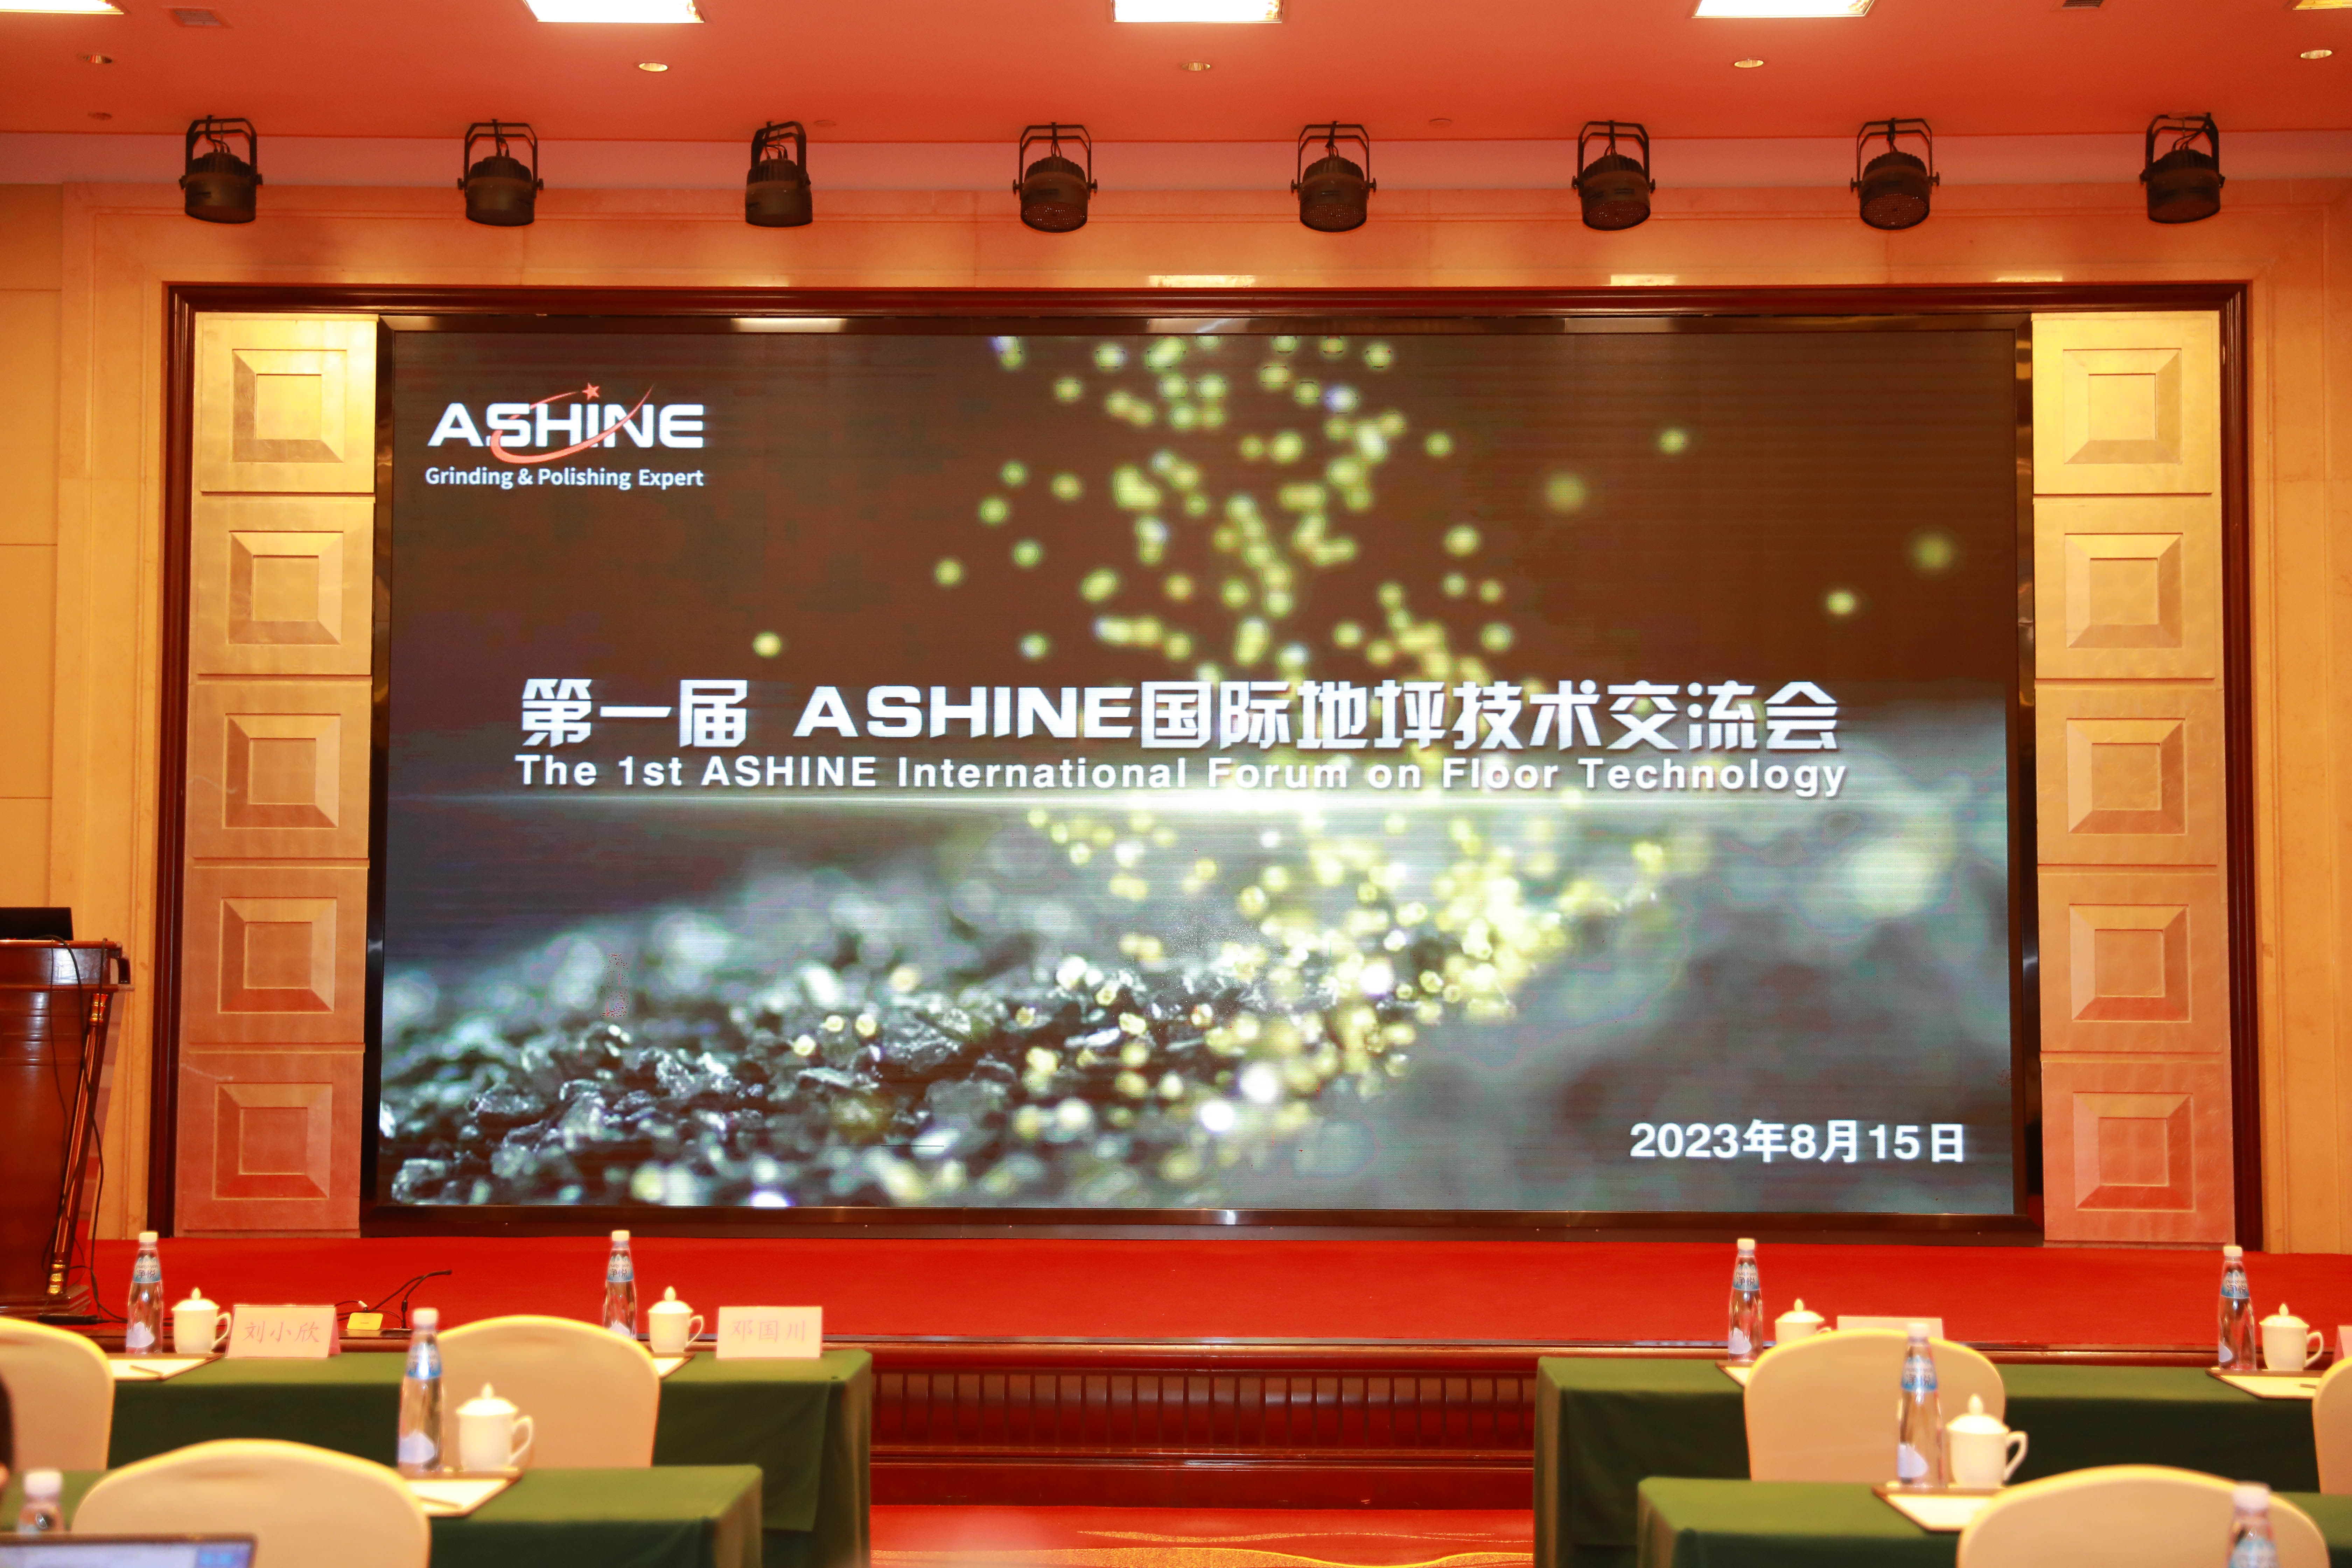 1. Ashine'i rahvusvaheline põrandatehnoloogia foorum